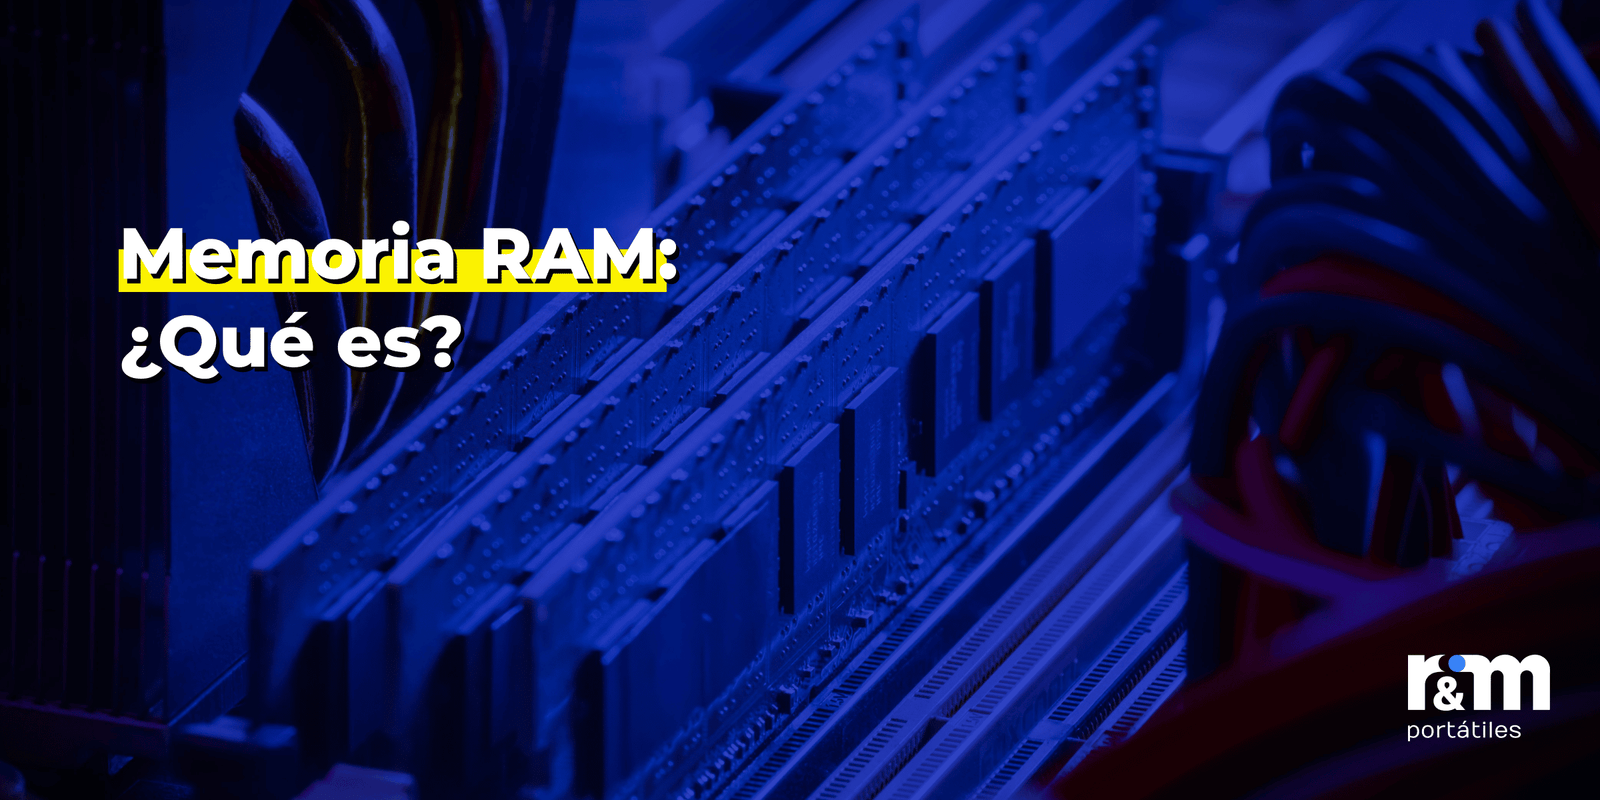 Memoria RAM: ¿Qué es, para qué sirve y cuánta necesitas?